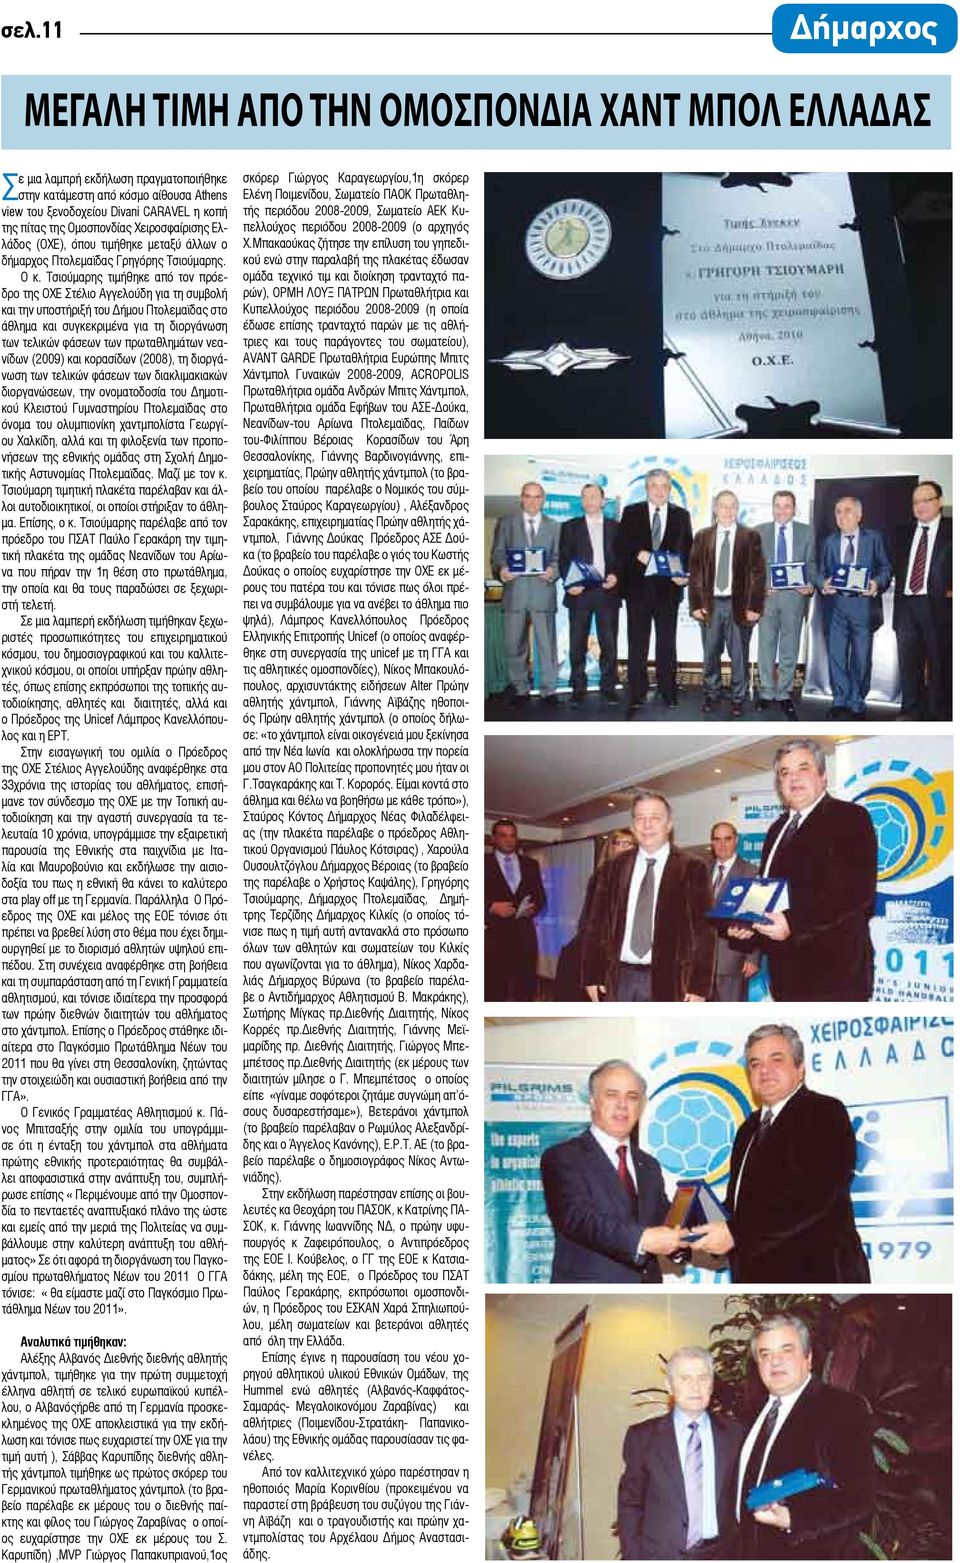 Τσιούμαρης τιμήθηκε από τον πρόεδρο της ΟΧΕ Στέλιο Αγγελούδη για τη συμβολή και την υποστήριξή του Δήμου Πτολεμαϊδας στο άθλημα και συγκεκριμένα για τη διοργάνωση των τελικών φάσεων των πρωταθλημάτων